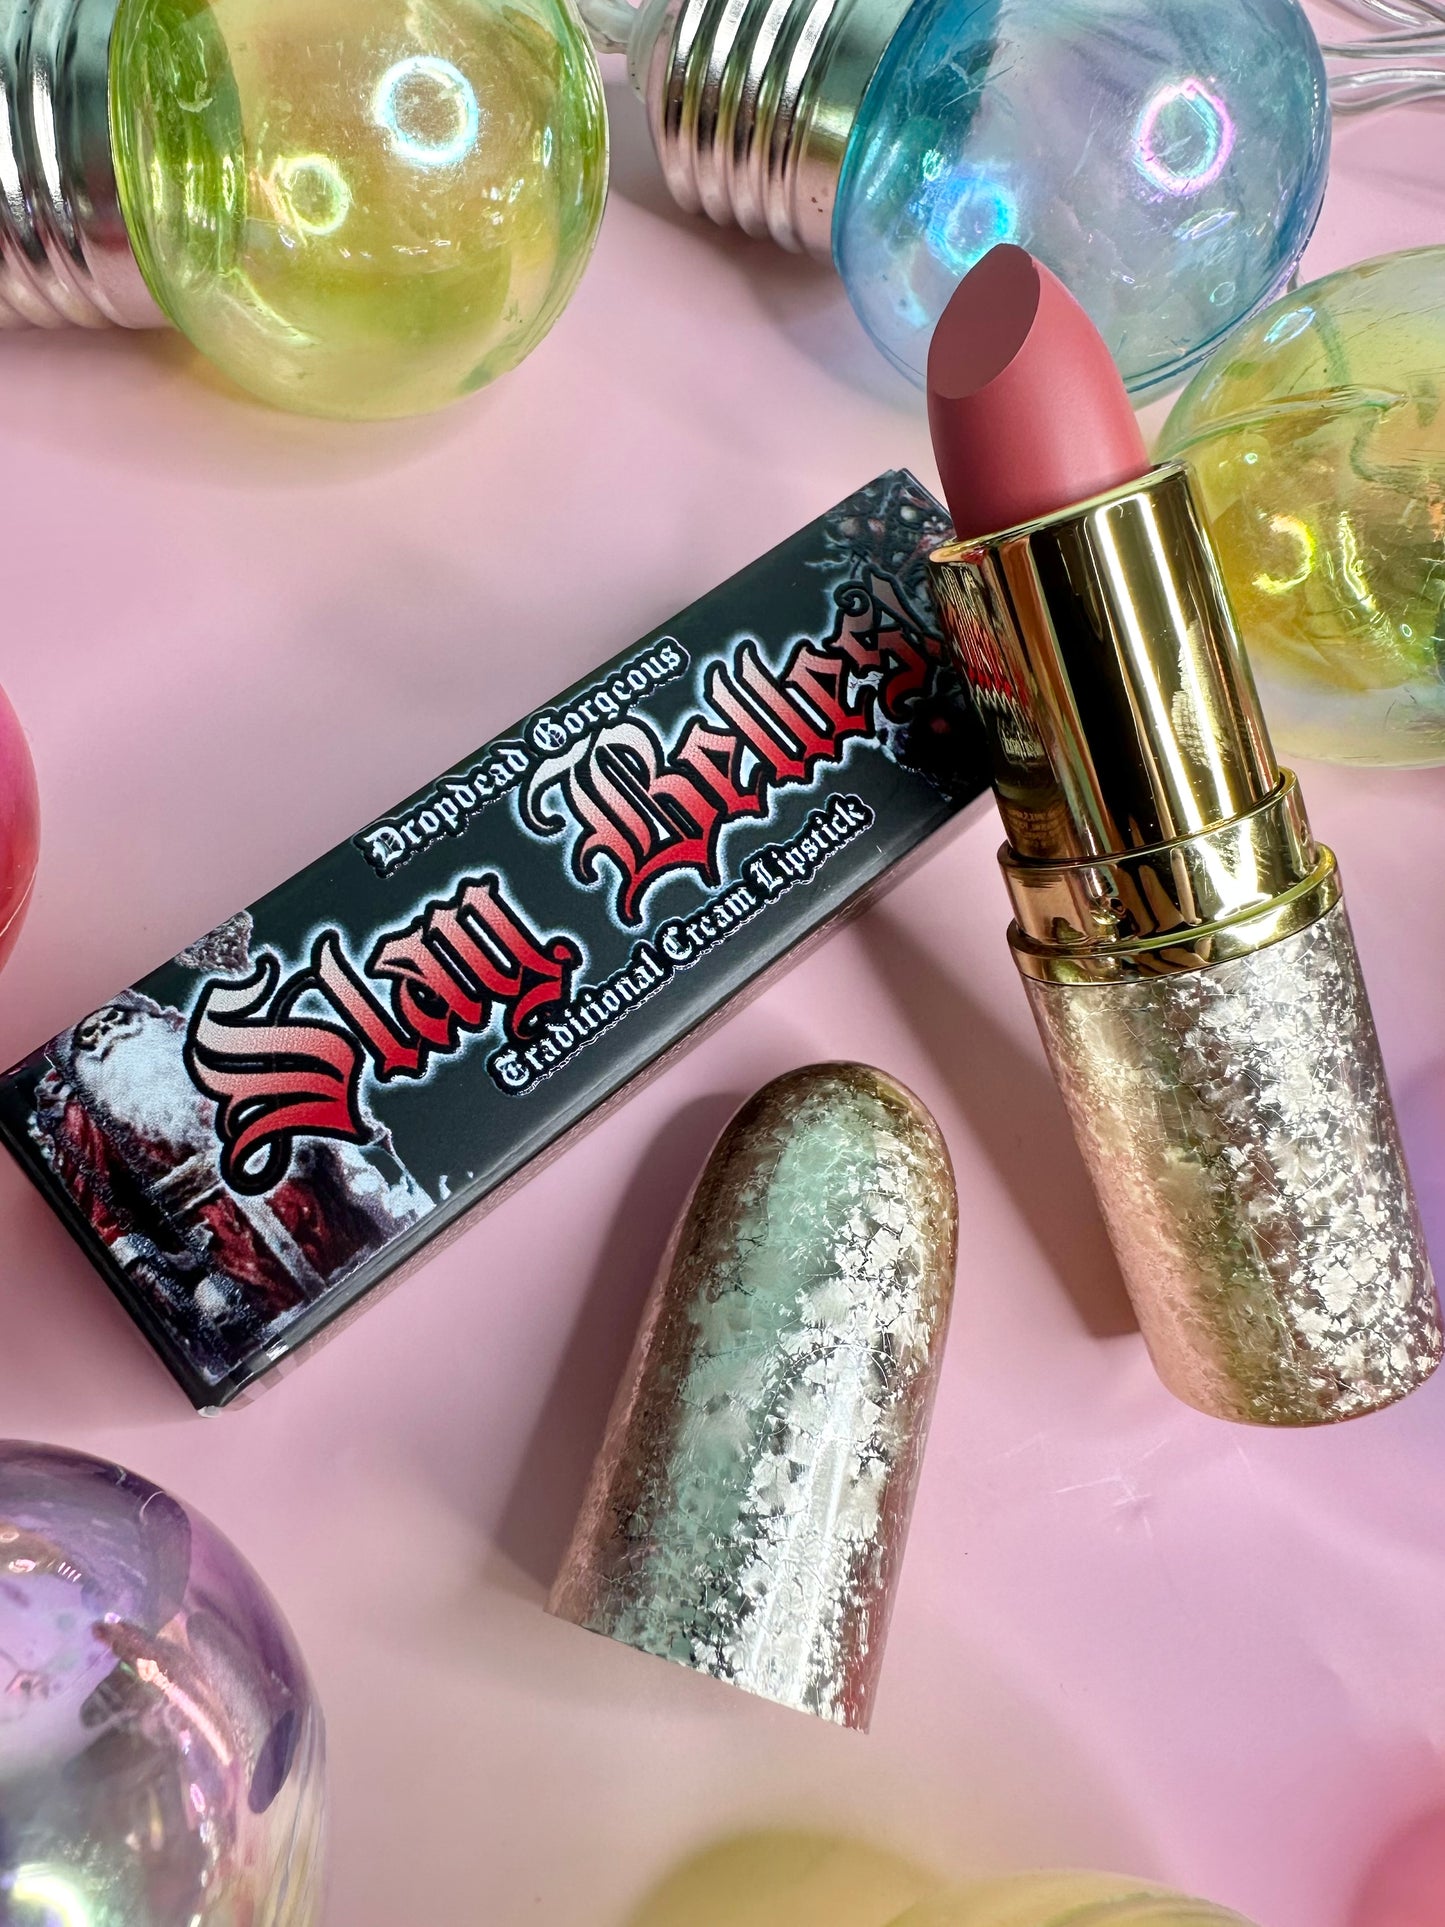 BURNT CORAL - SLAY BELLES Cream Velvet lipstick